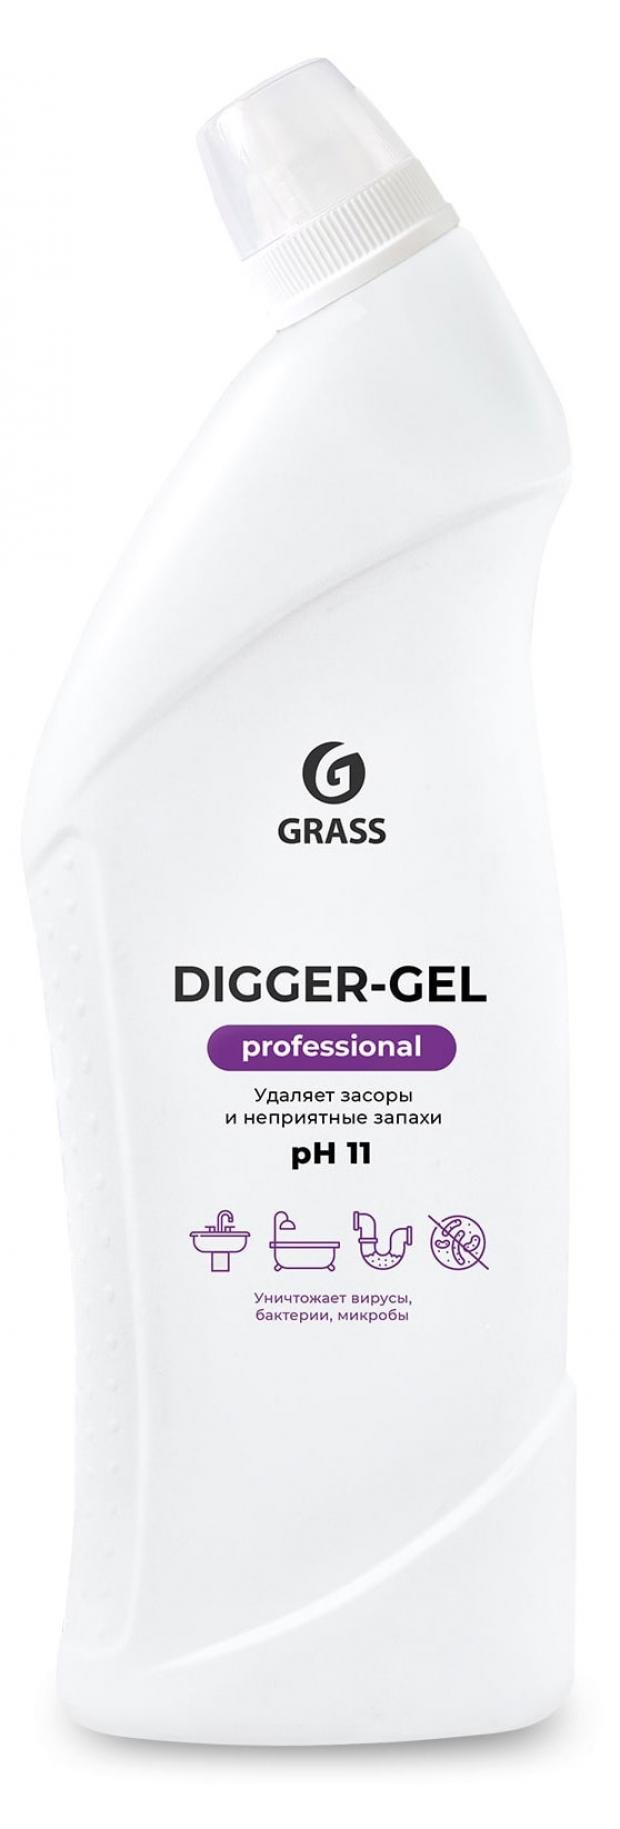 Средство для прочистки канализационных труб Grass Digger-gel Professional, 1 л